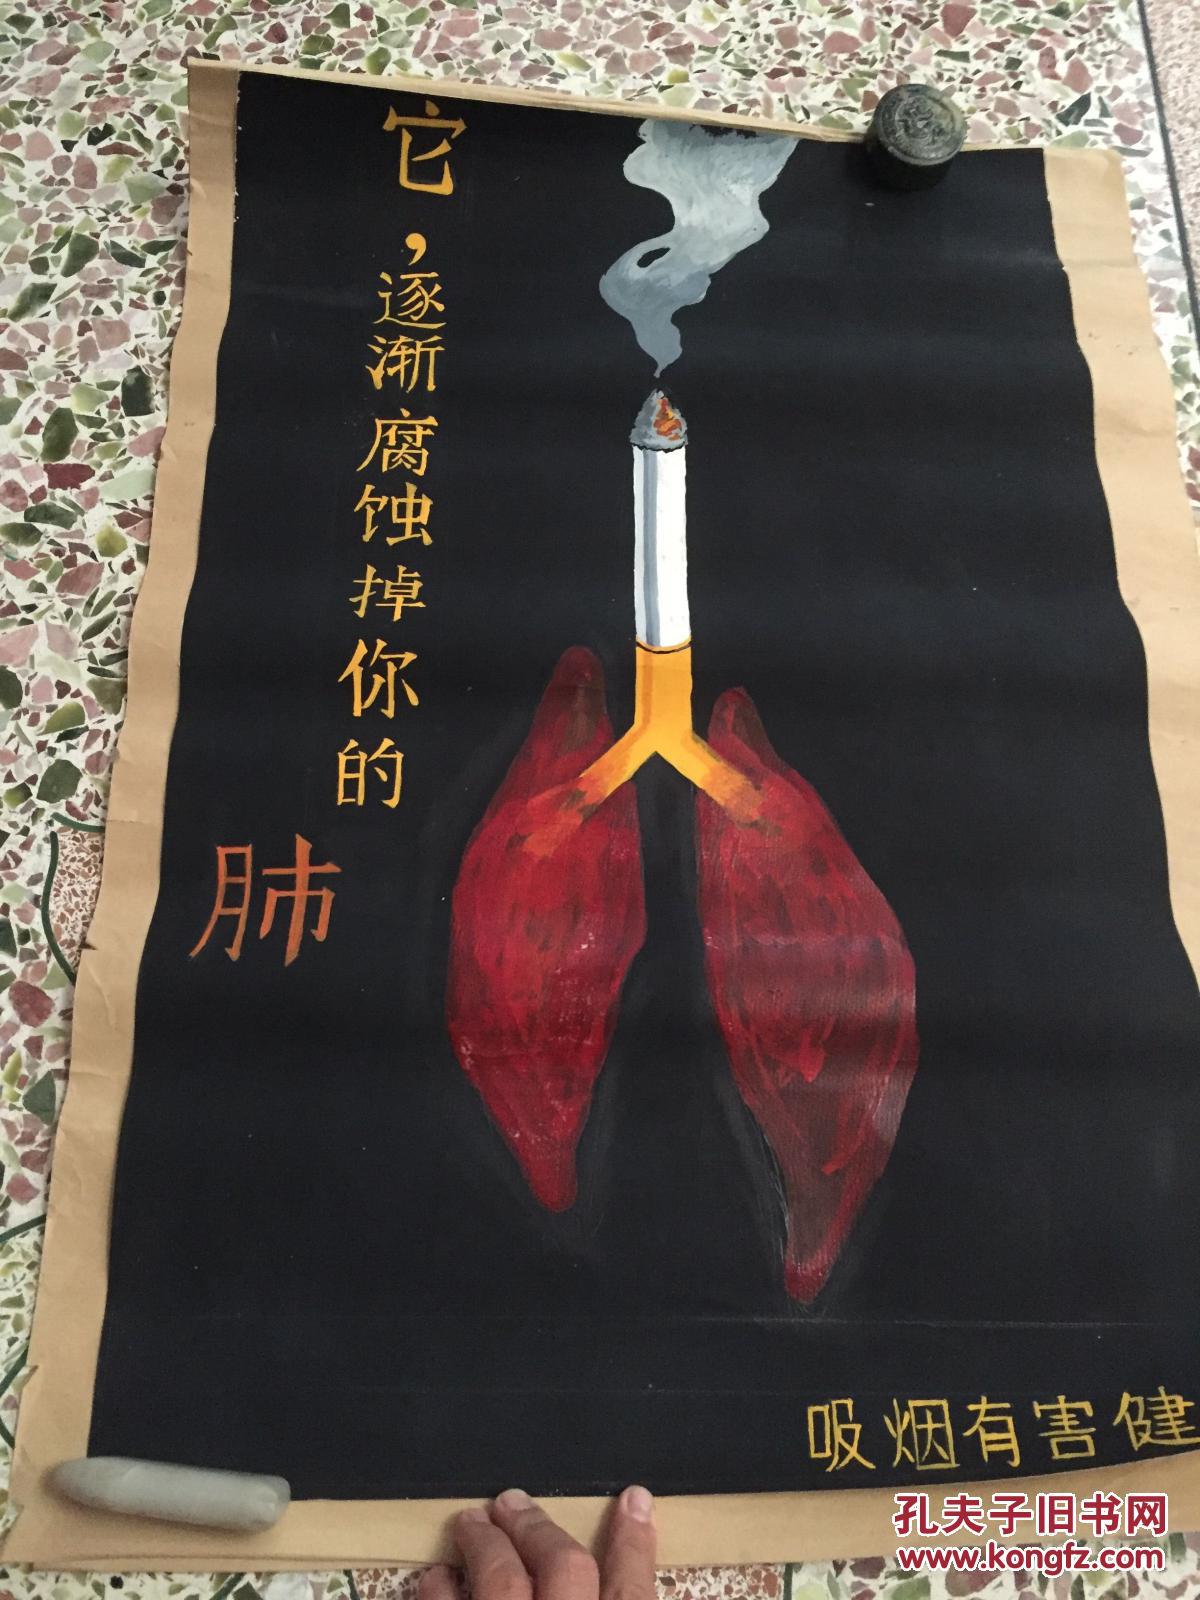 戒烟油画-公益广告吸烟有害健康,广州美术学院,池志浩学生作品